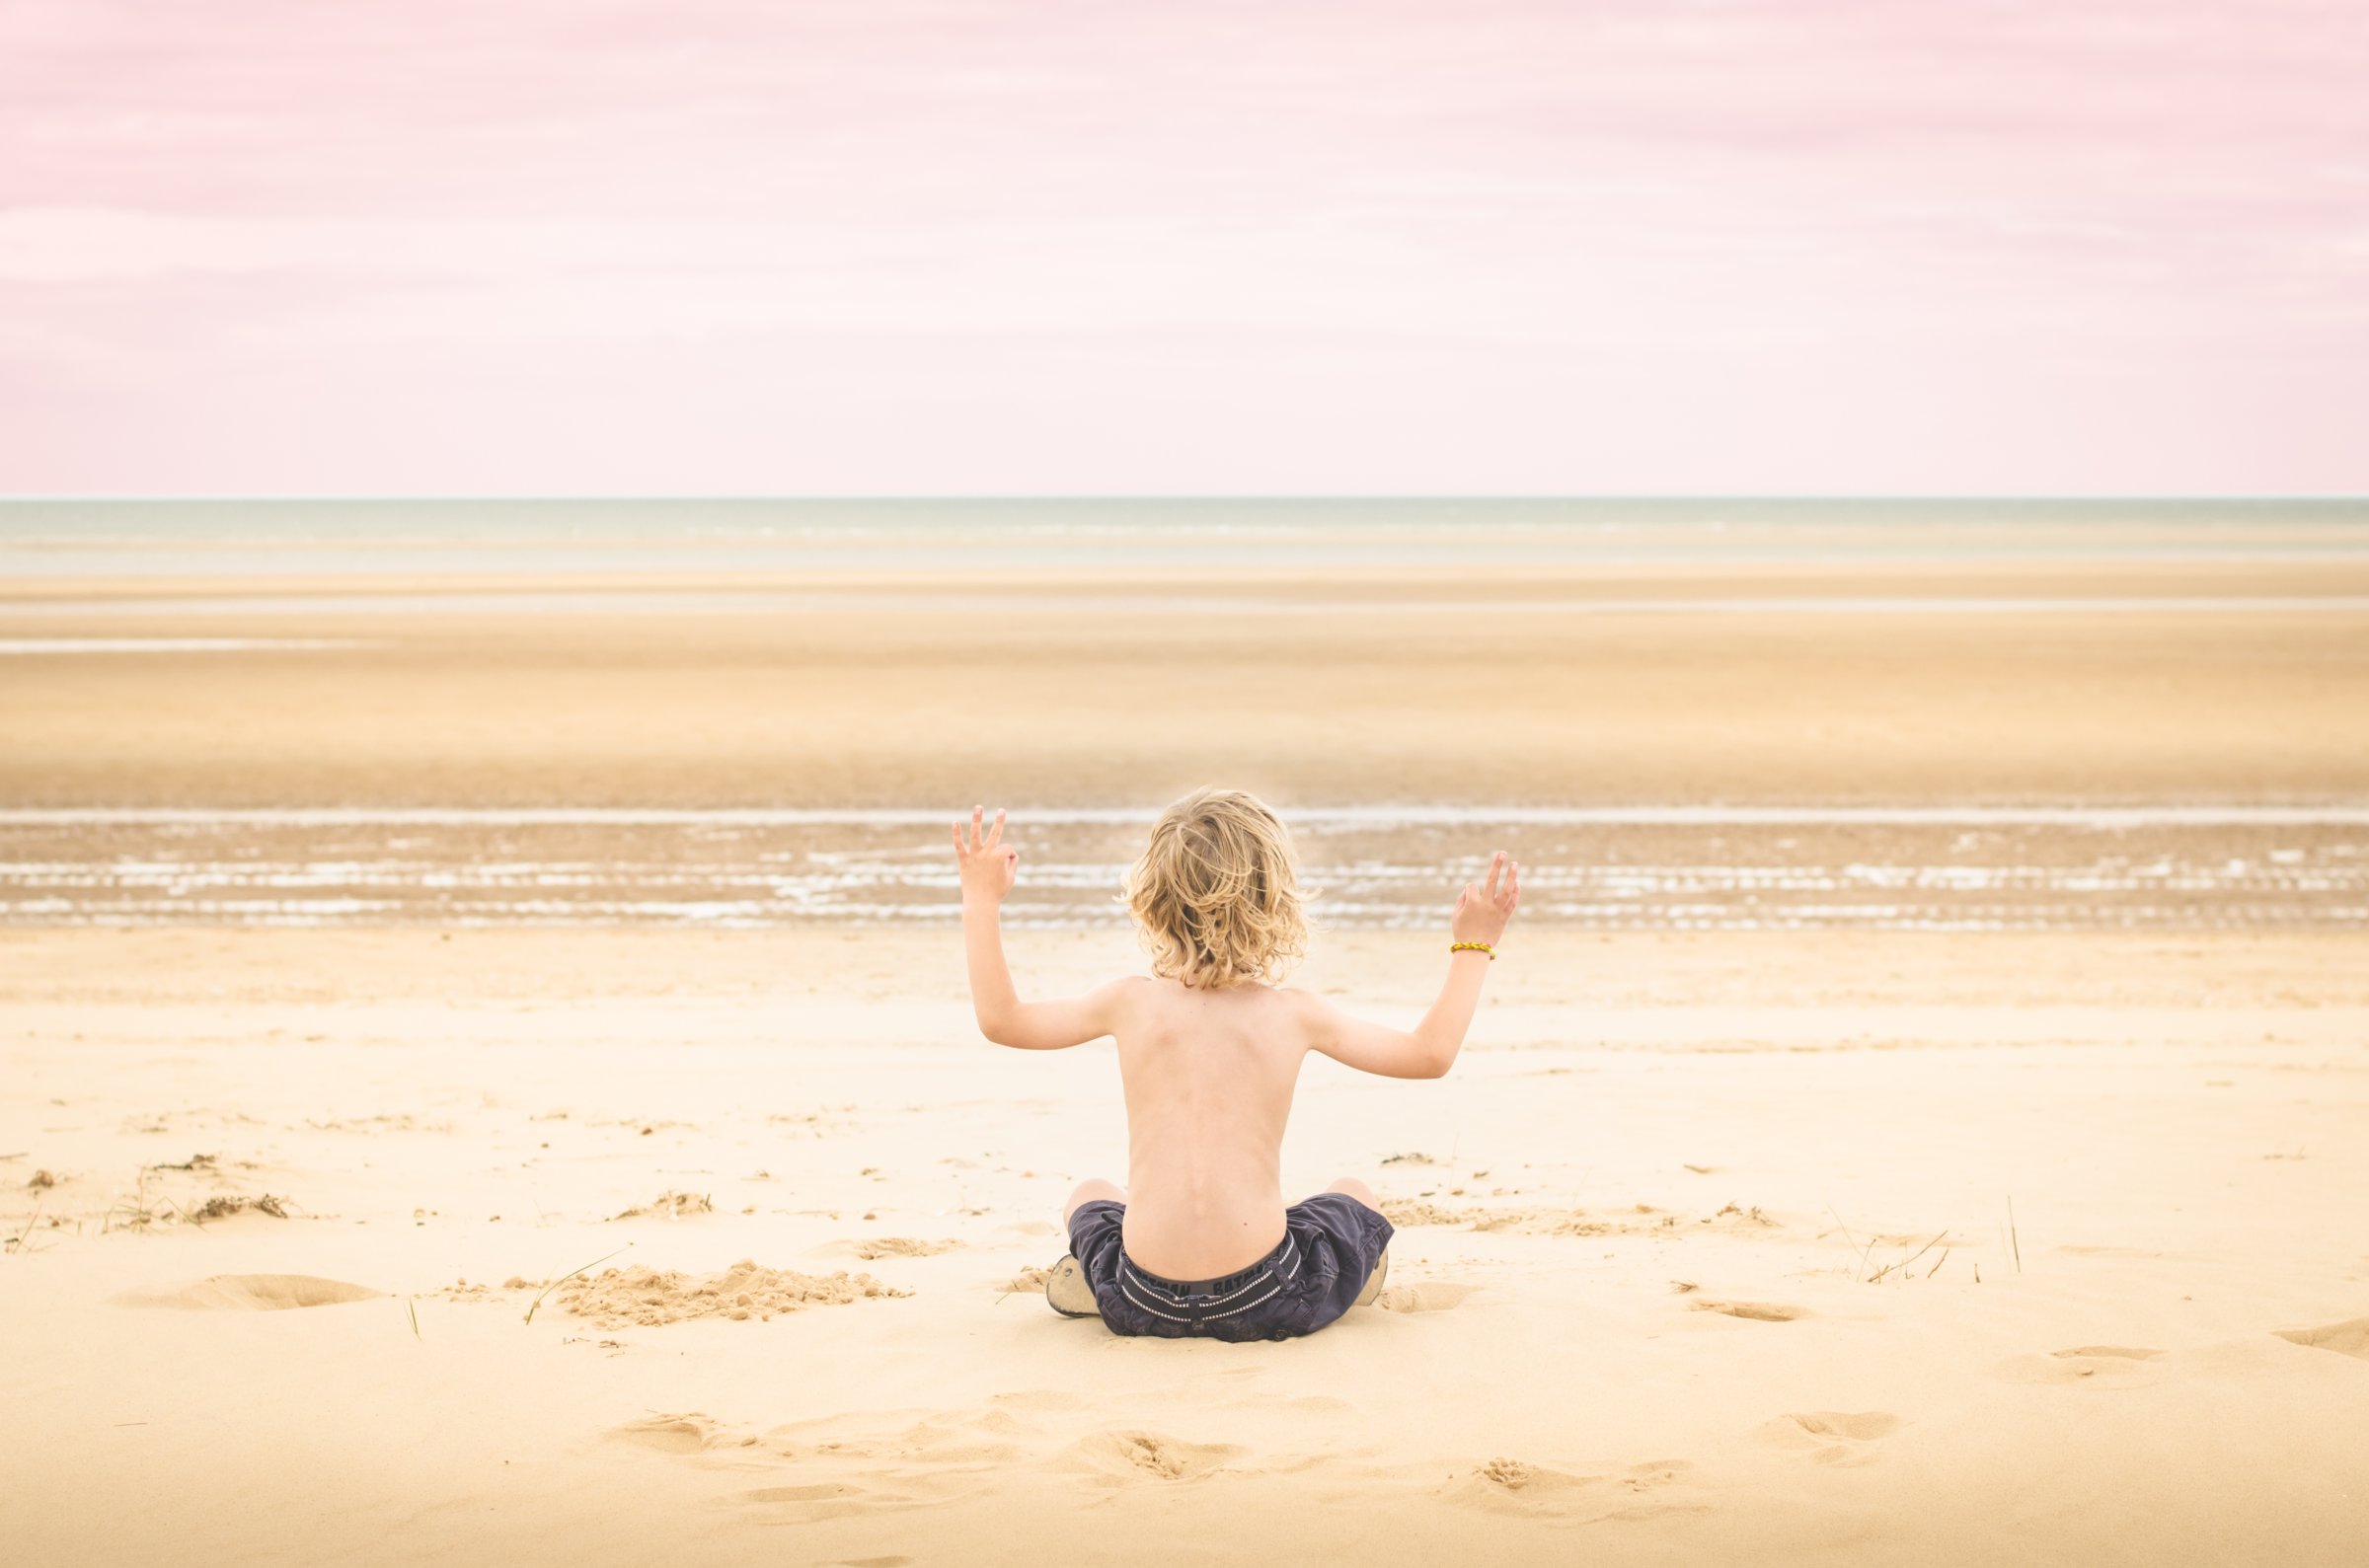 Boy sitting on beach, arms raised